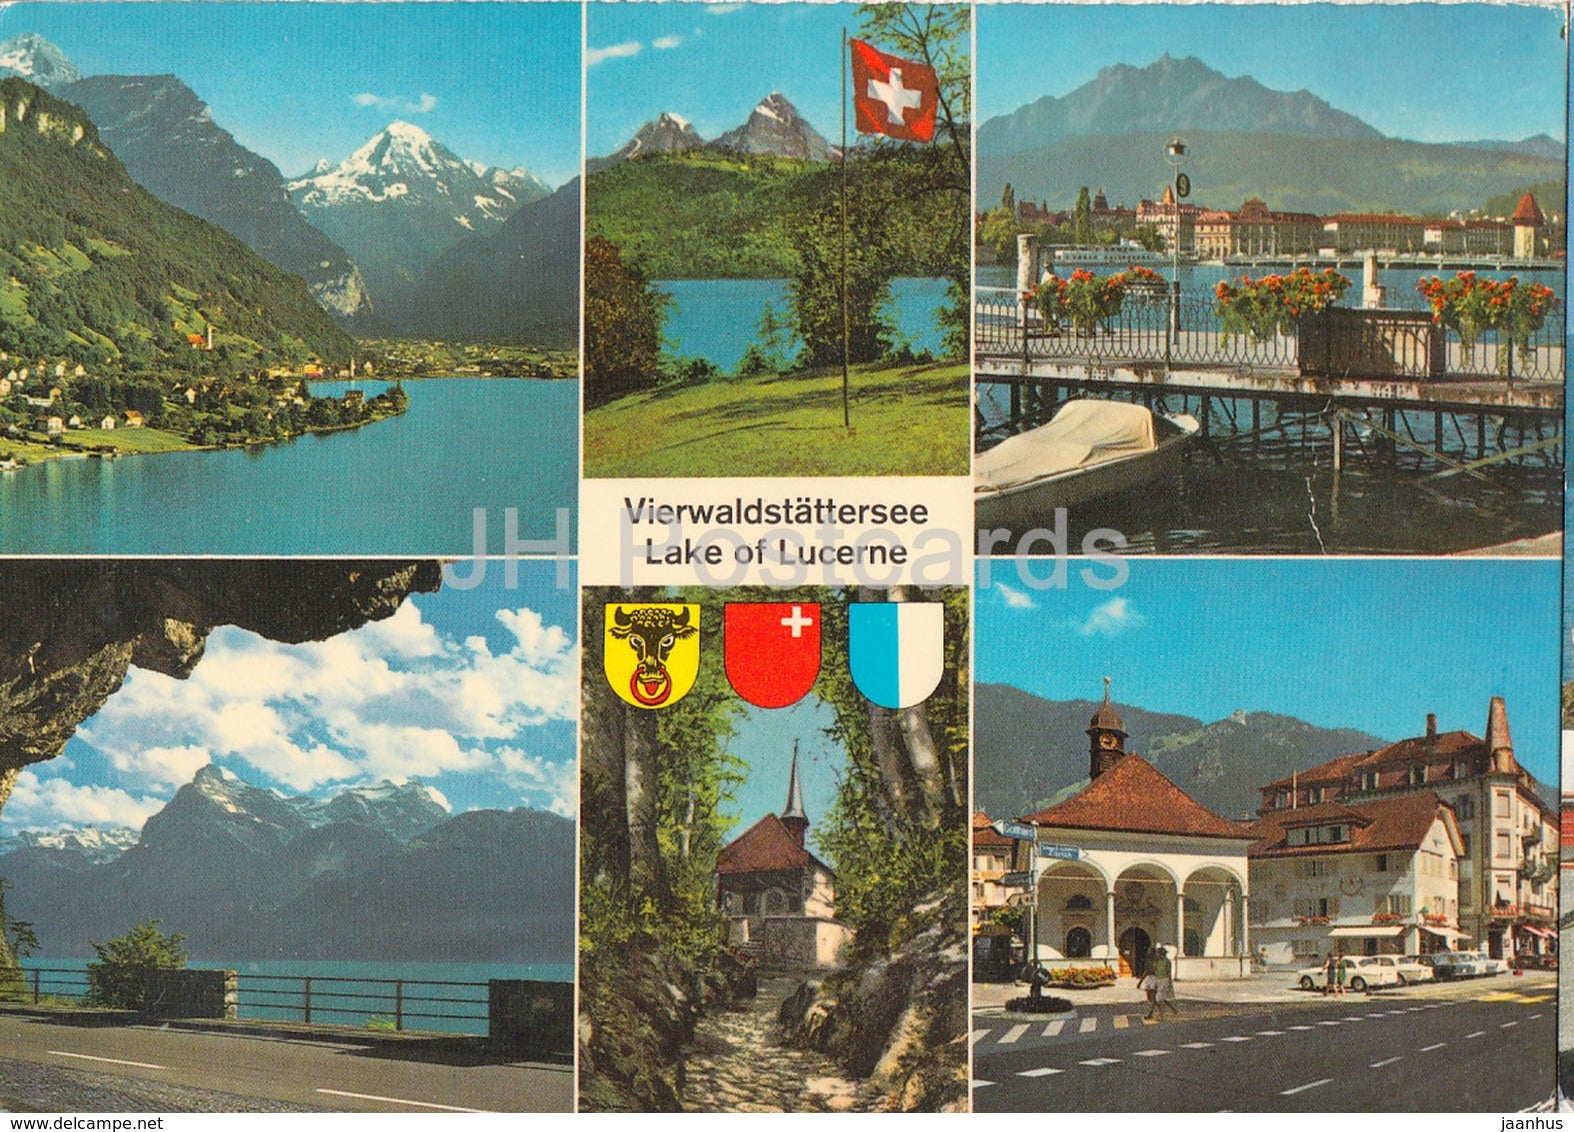 Vierwaldstattersee - Lake of Lucerne - Fluelen - Rutli - Luzern - Axenstrasse - Hohle Gasse - 16696 - Switzerland - used - JH Postcards